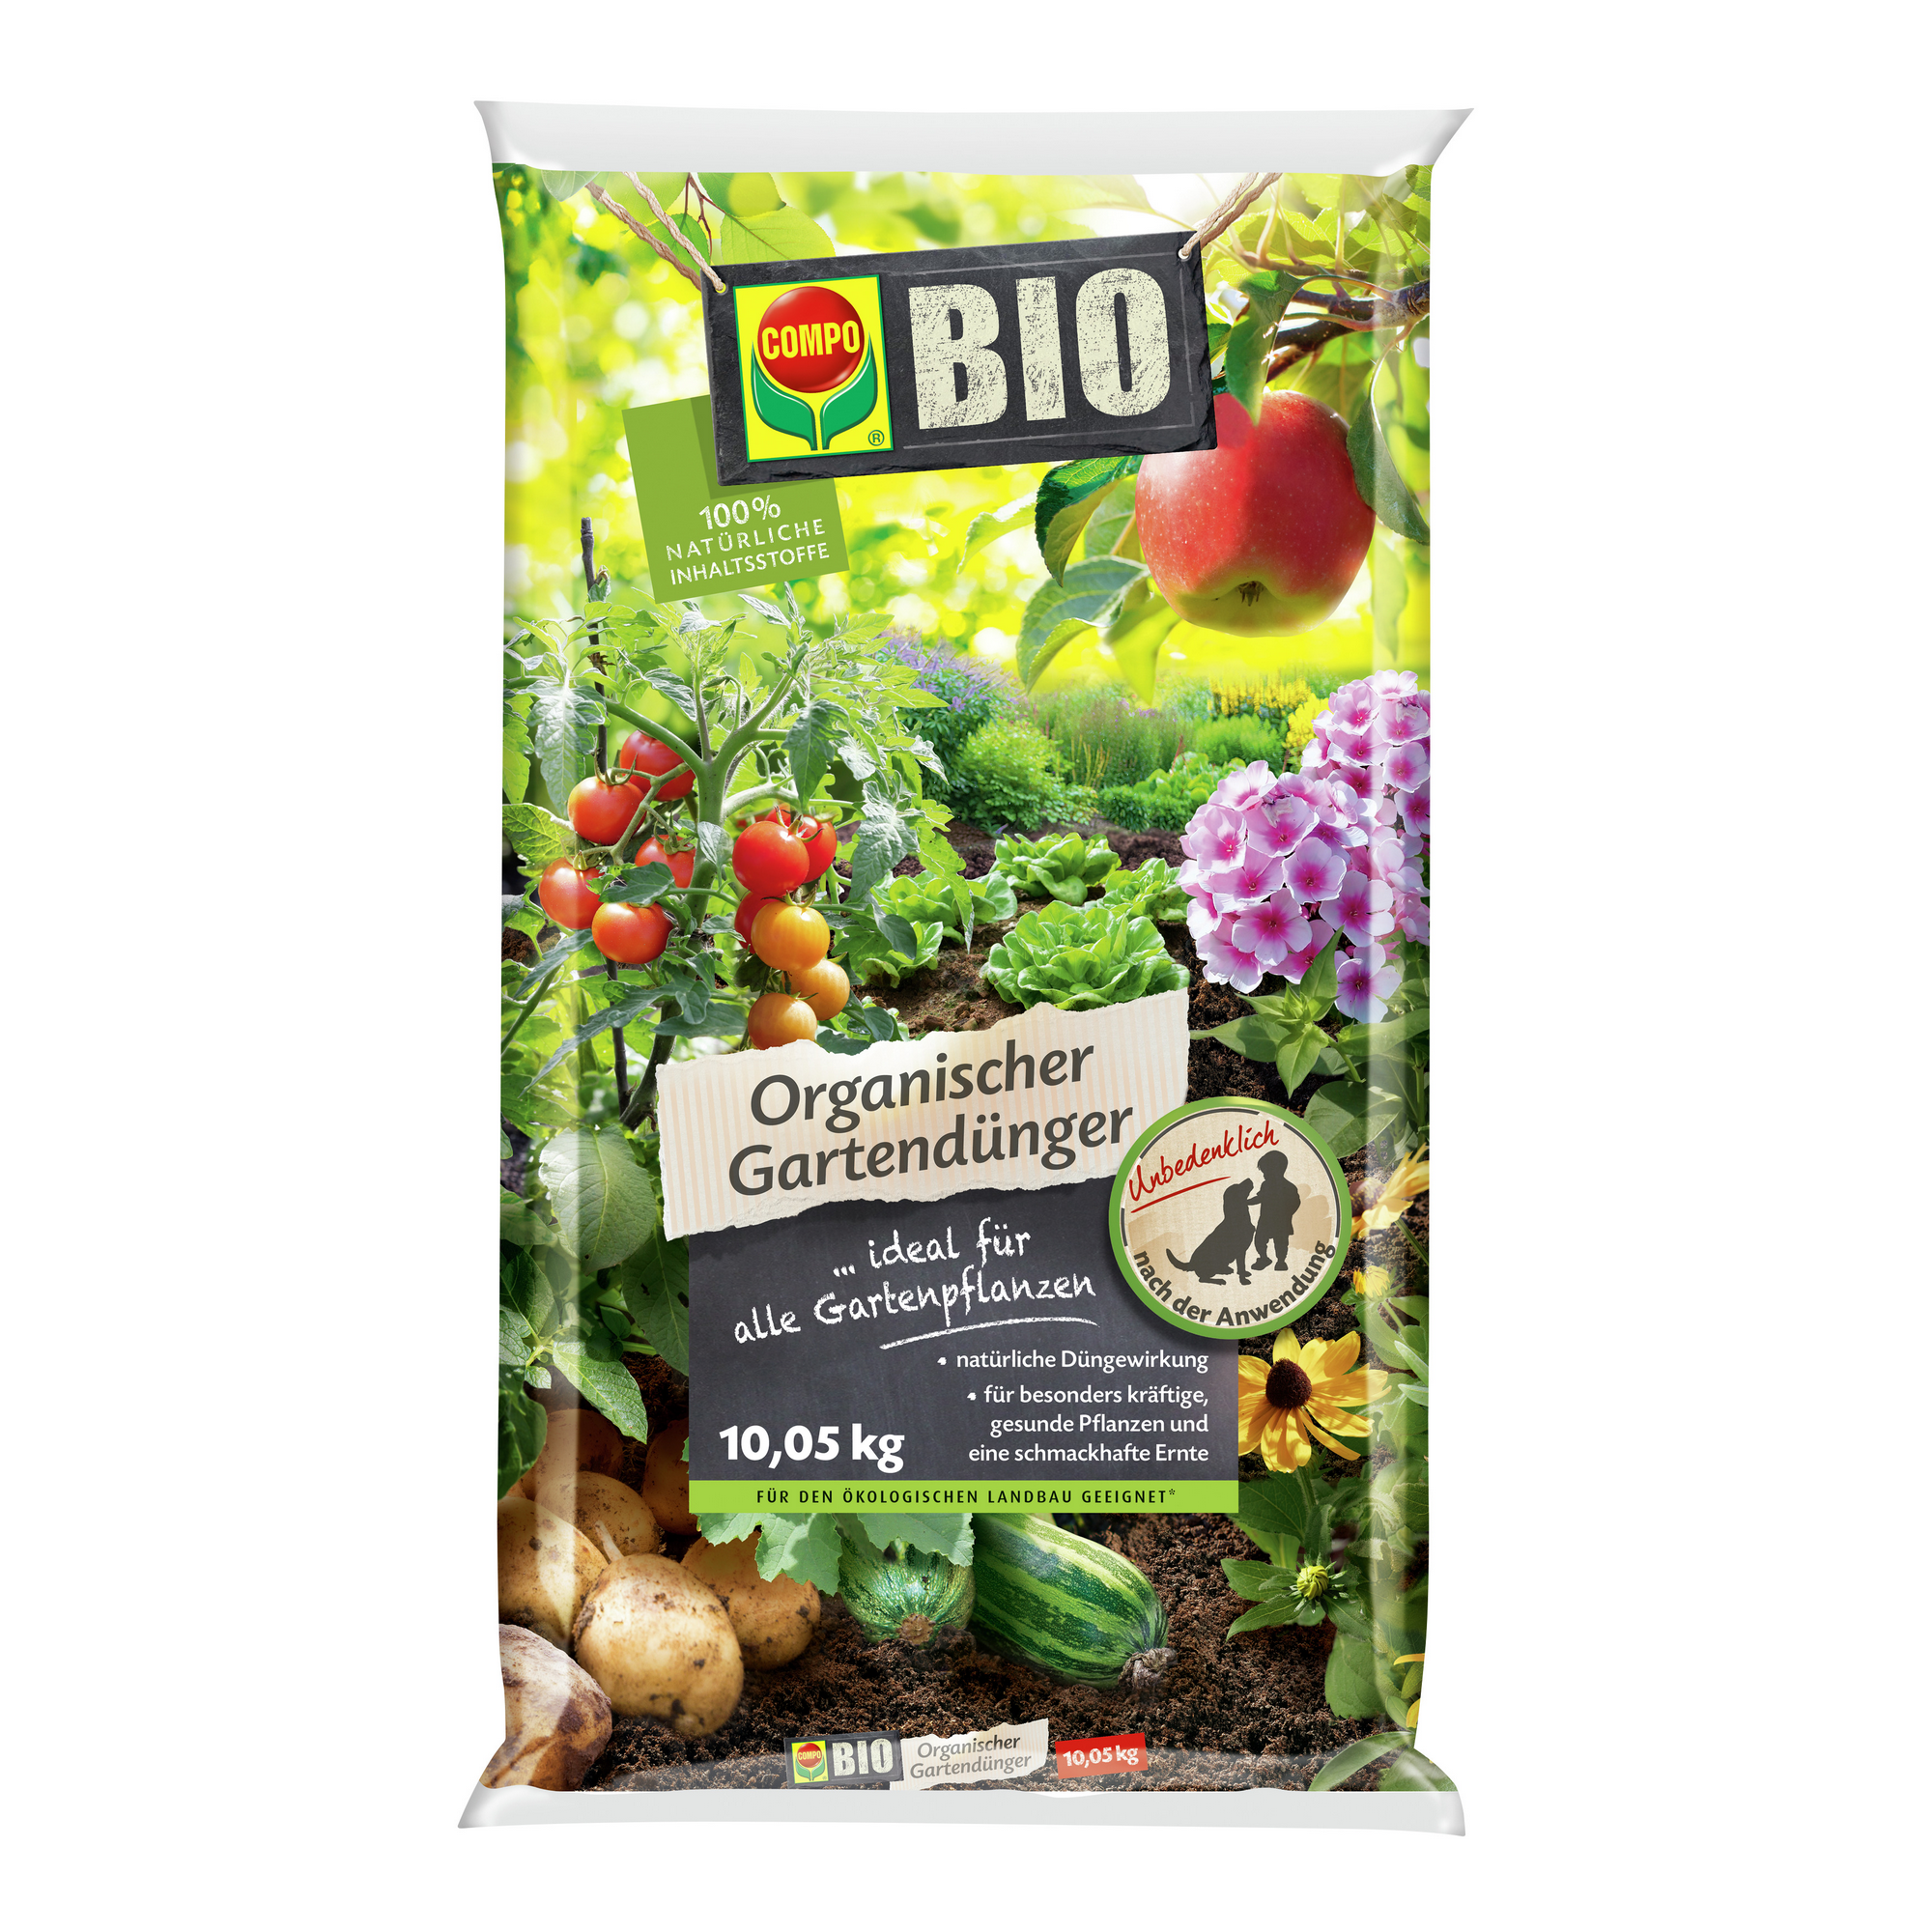 Organischer Bio-Gartendünger 10,05 kg + product picture